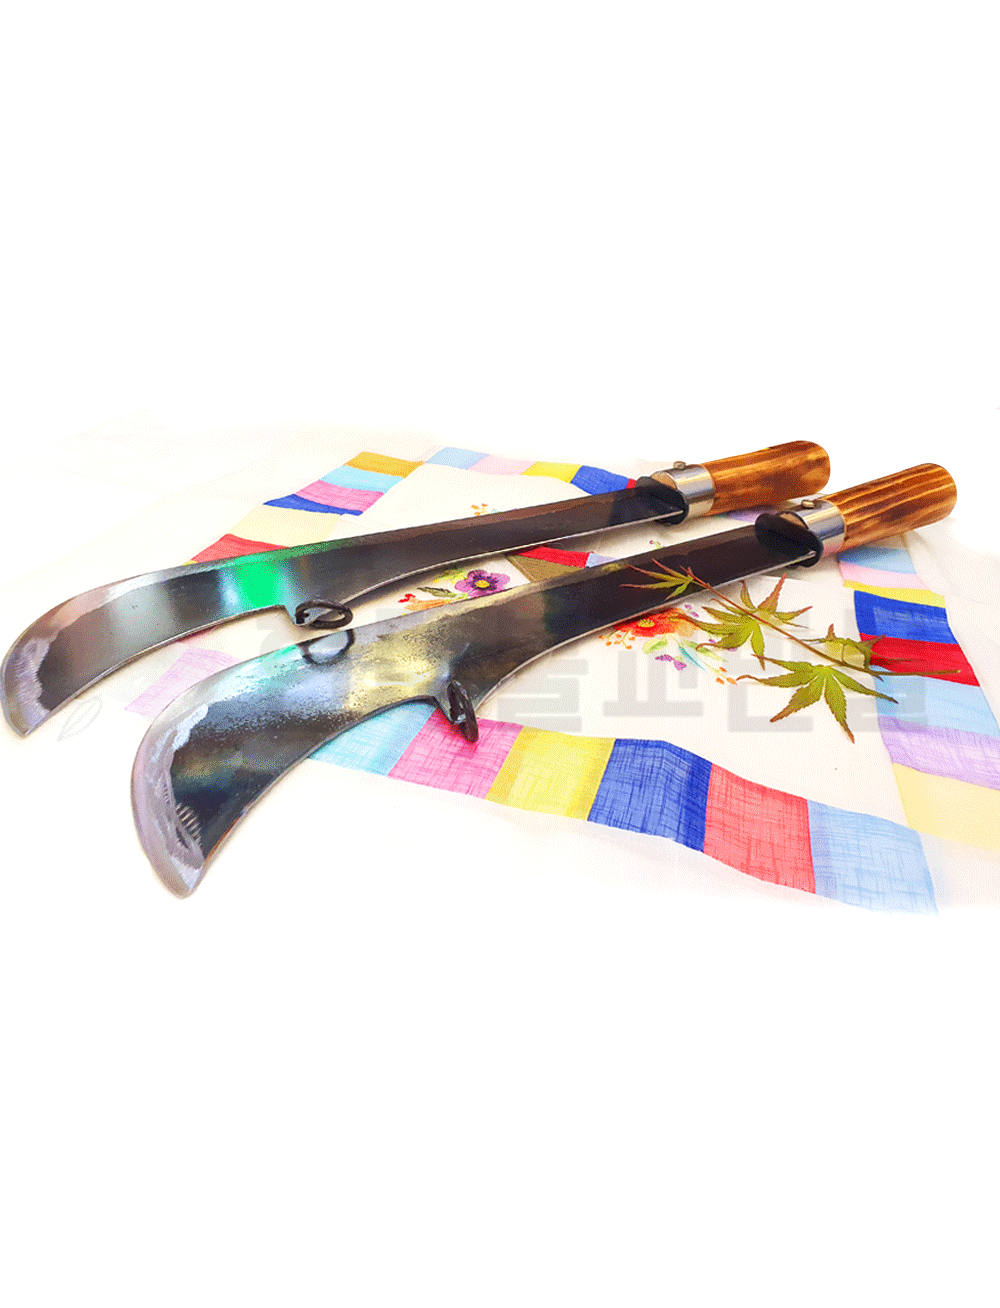 대장간 무쇠 신장칼(대) - 장군칼 별상칼 무속칼 신칼 긴칼 무구